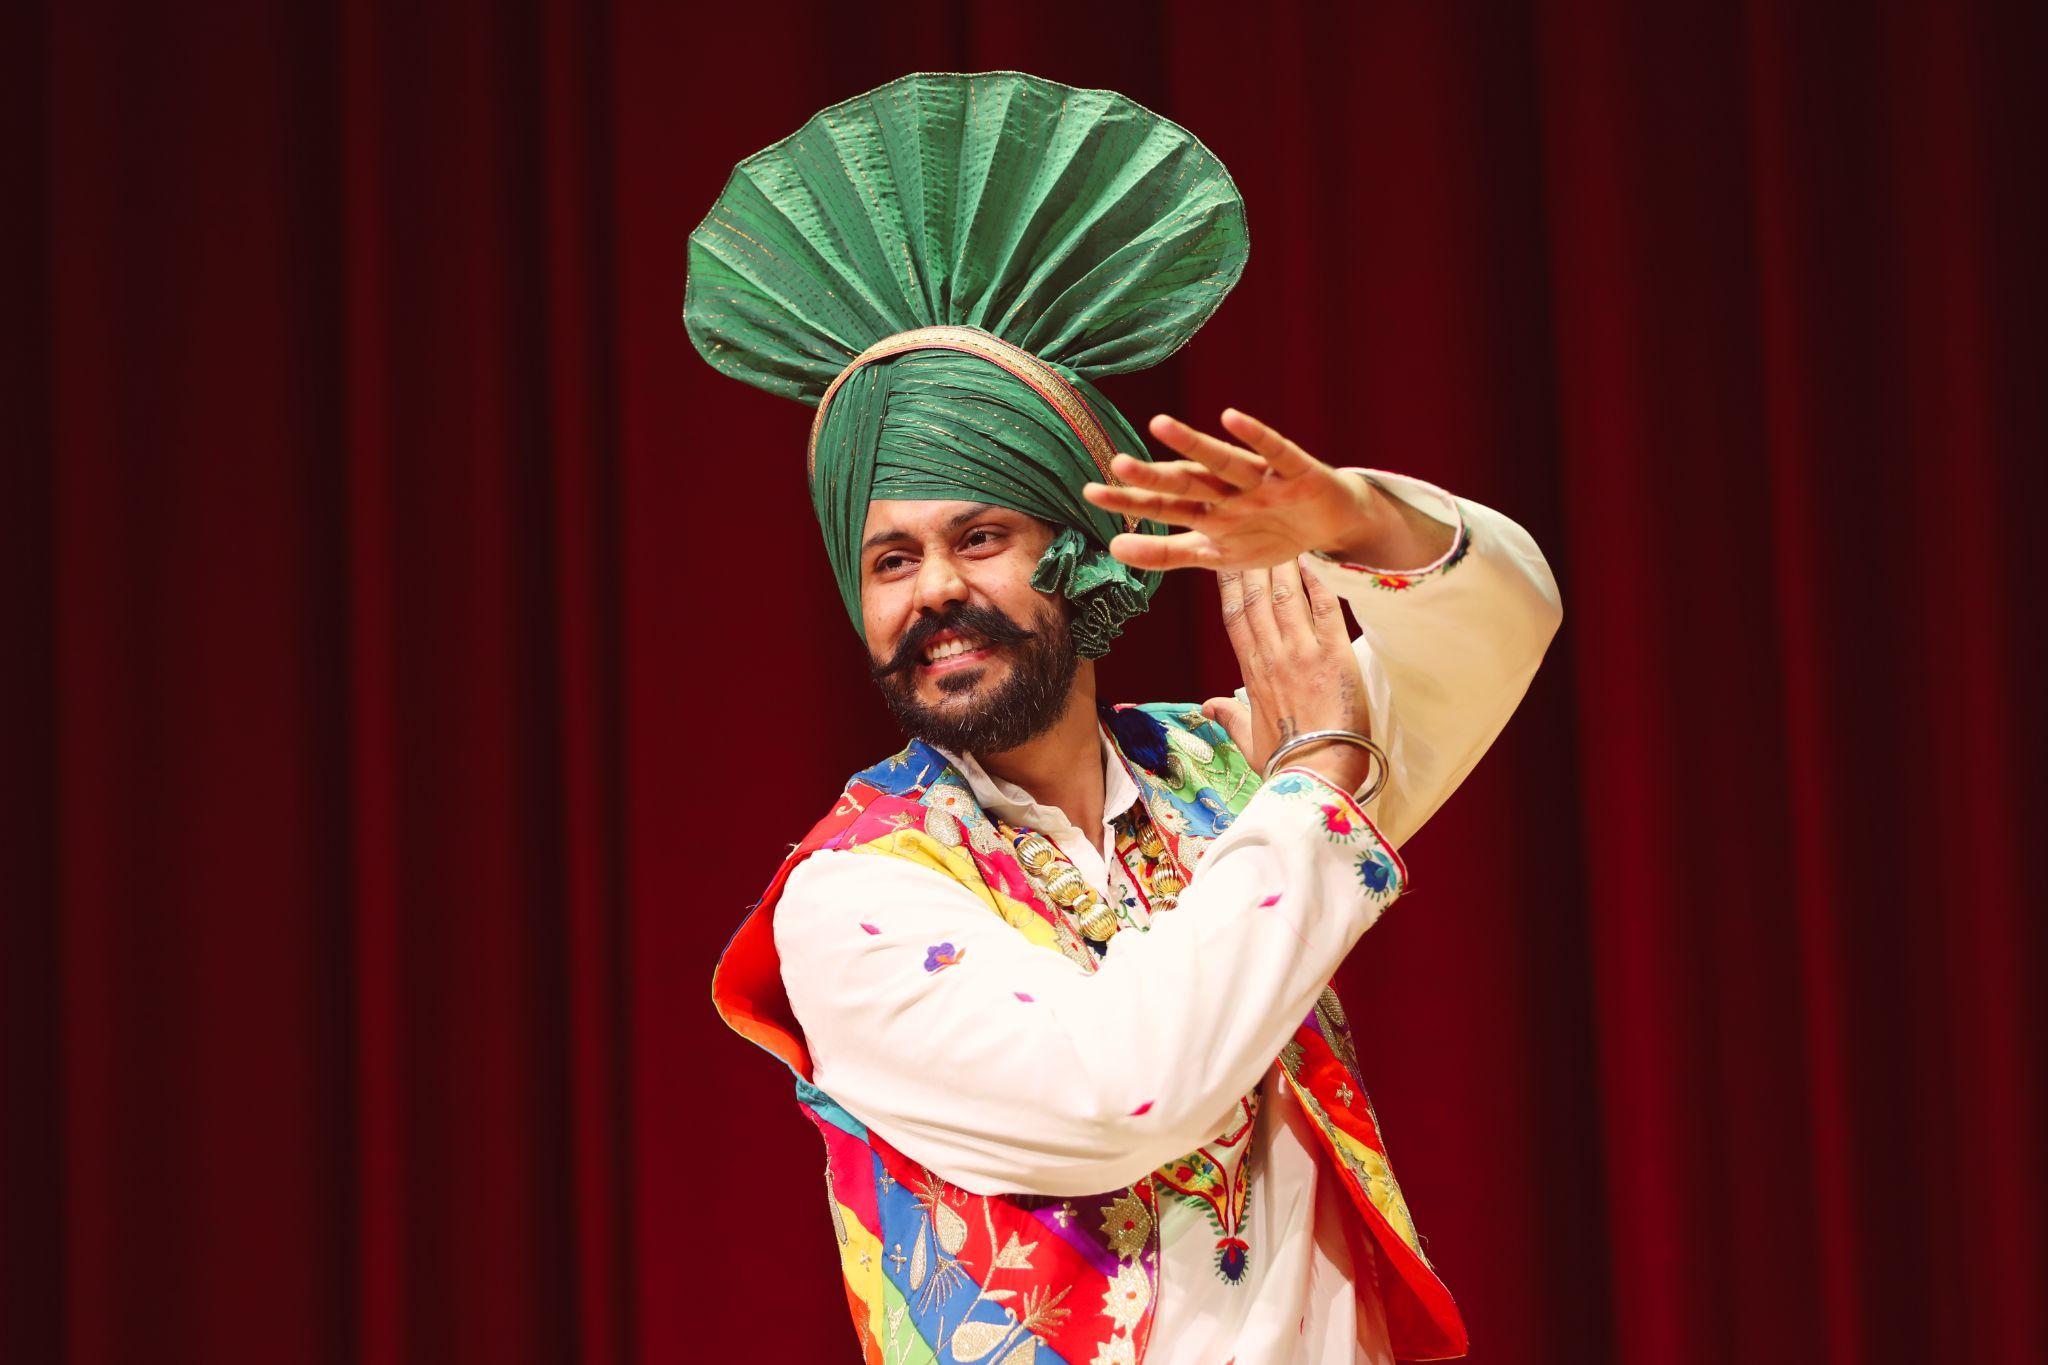 Đặc sắc những điệu múa dân gian Ấn Độ tại SIU